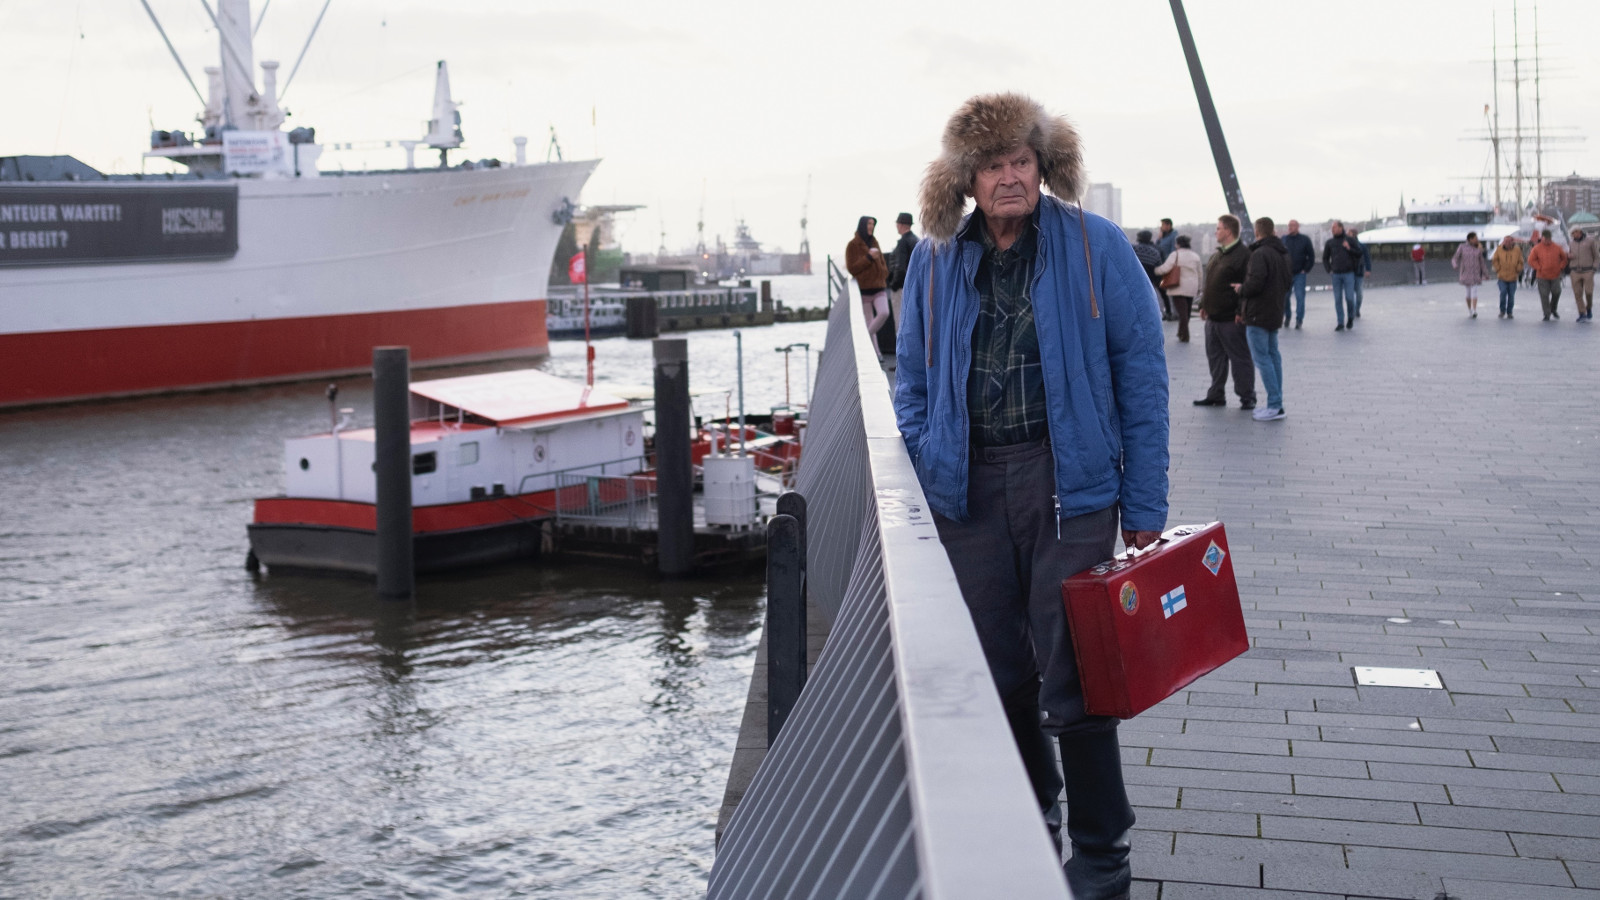 Kuvassa on oikealla Heikki Kinnunen sinisessä pusakassa ja karvahatussa satamassavesialtaan vieressä aidan luona.  Veden toisella puolella on puna-valkoinen laiva.